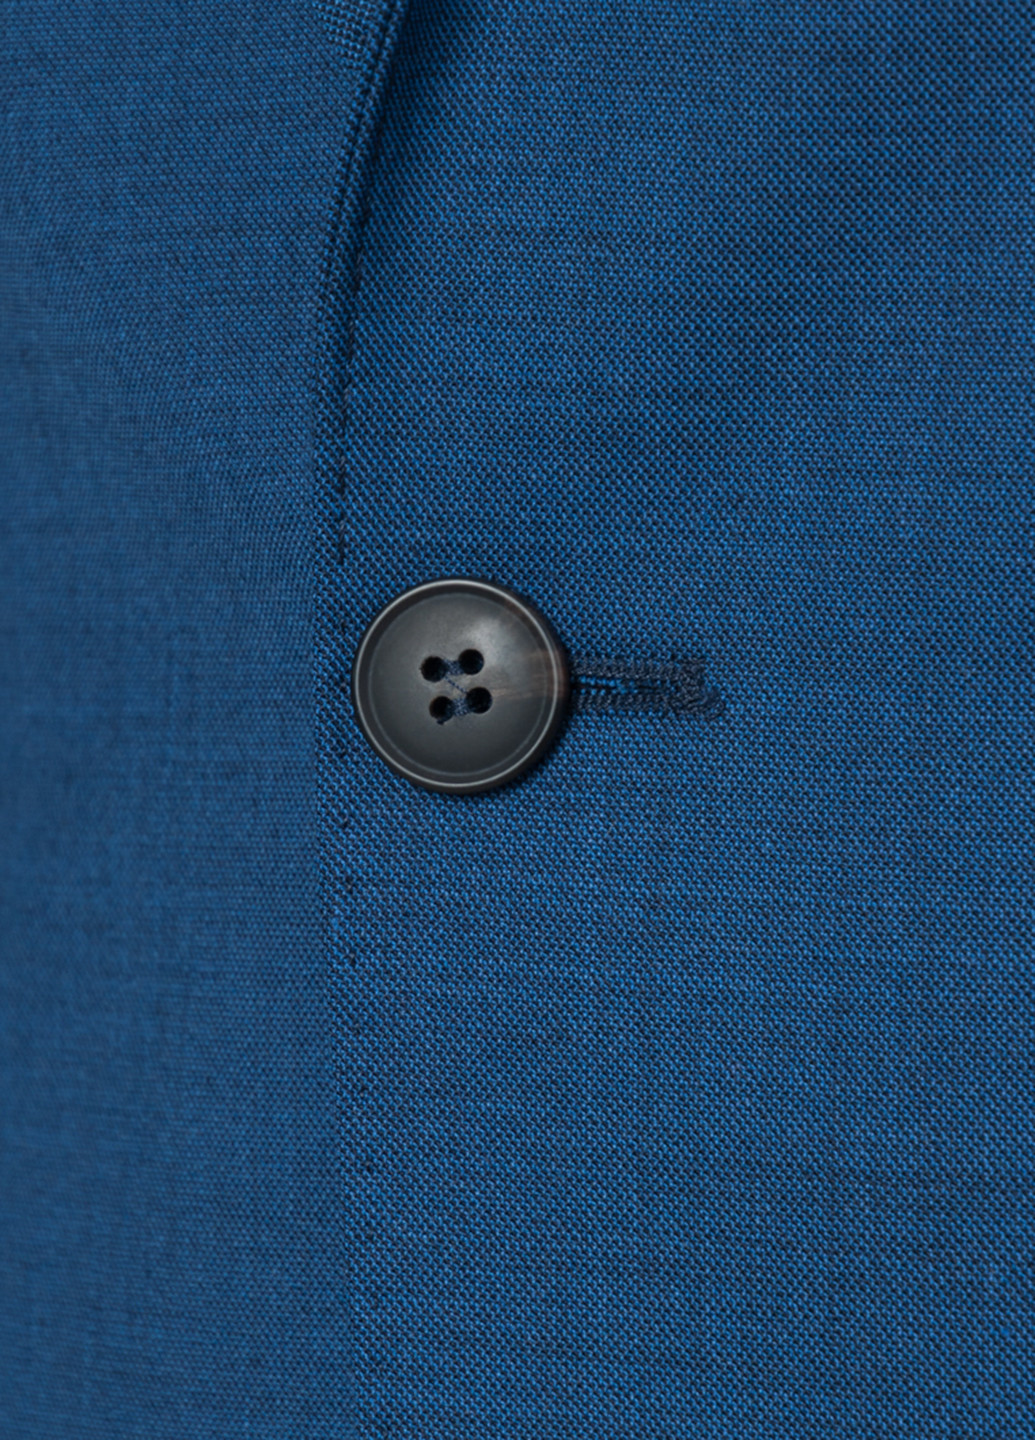 Синій демісезонний костюм (піджак, штани) брючний Gregory Arber